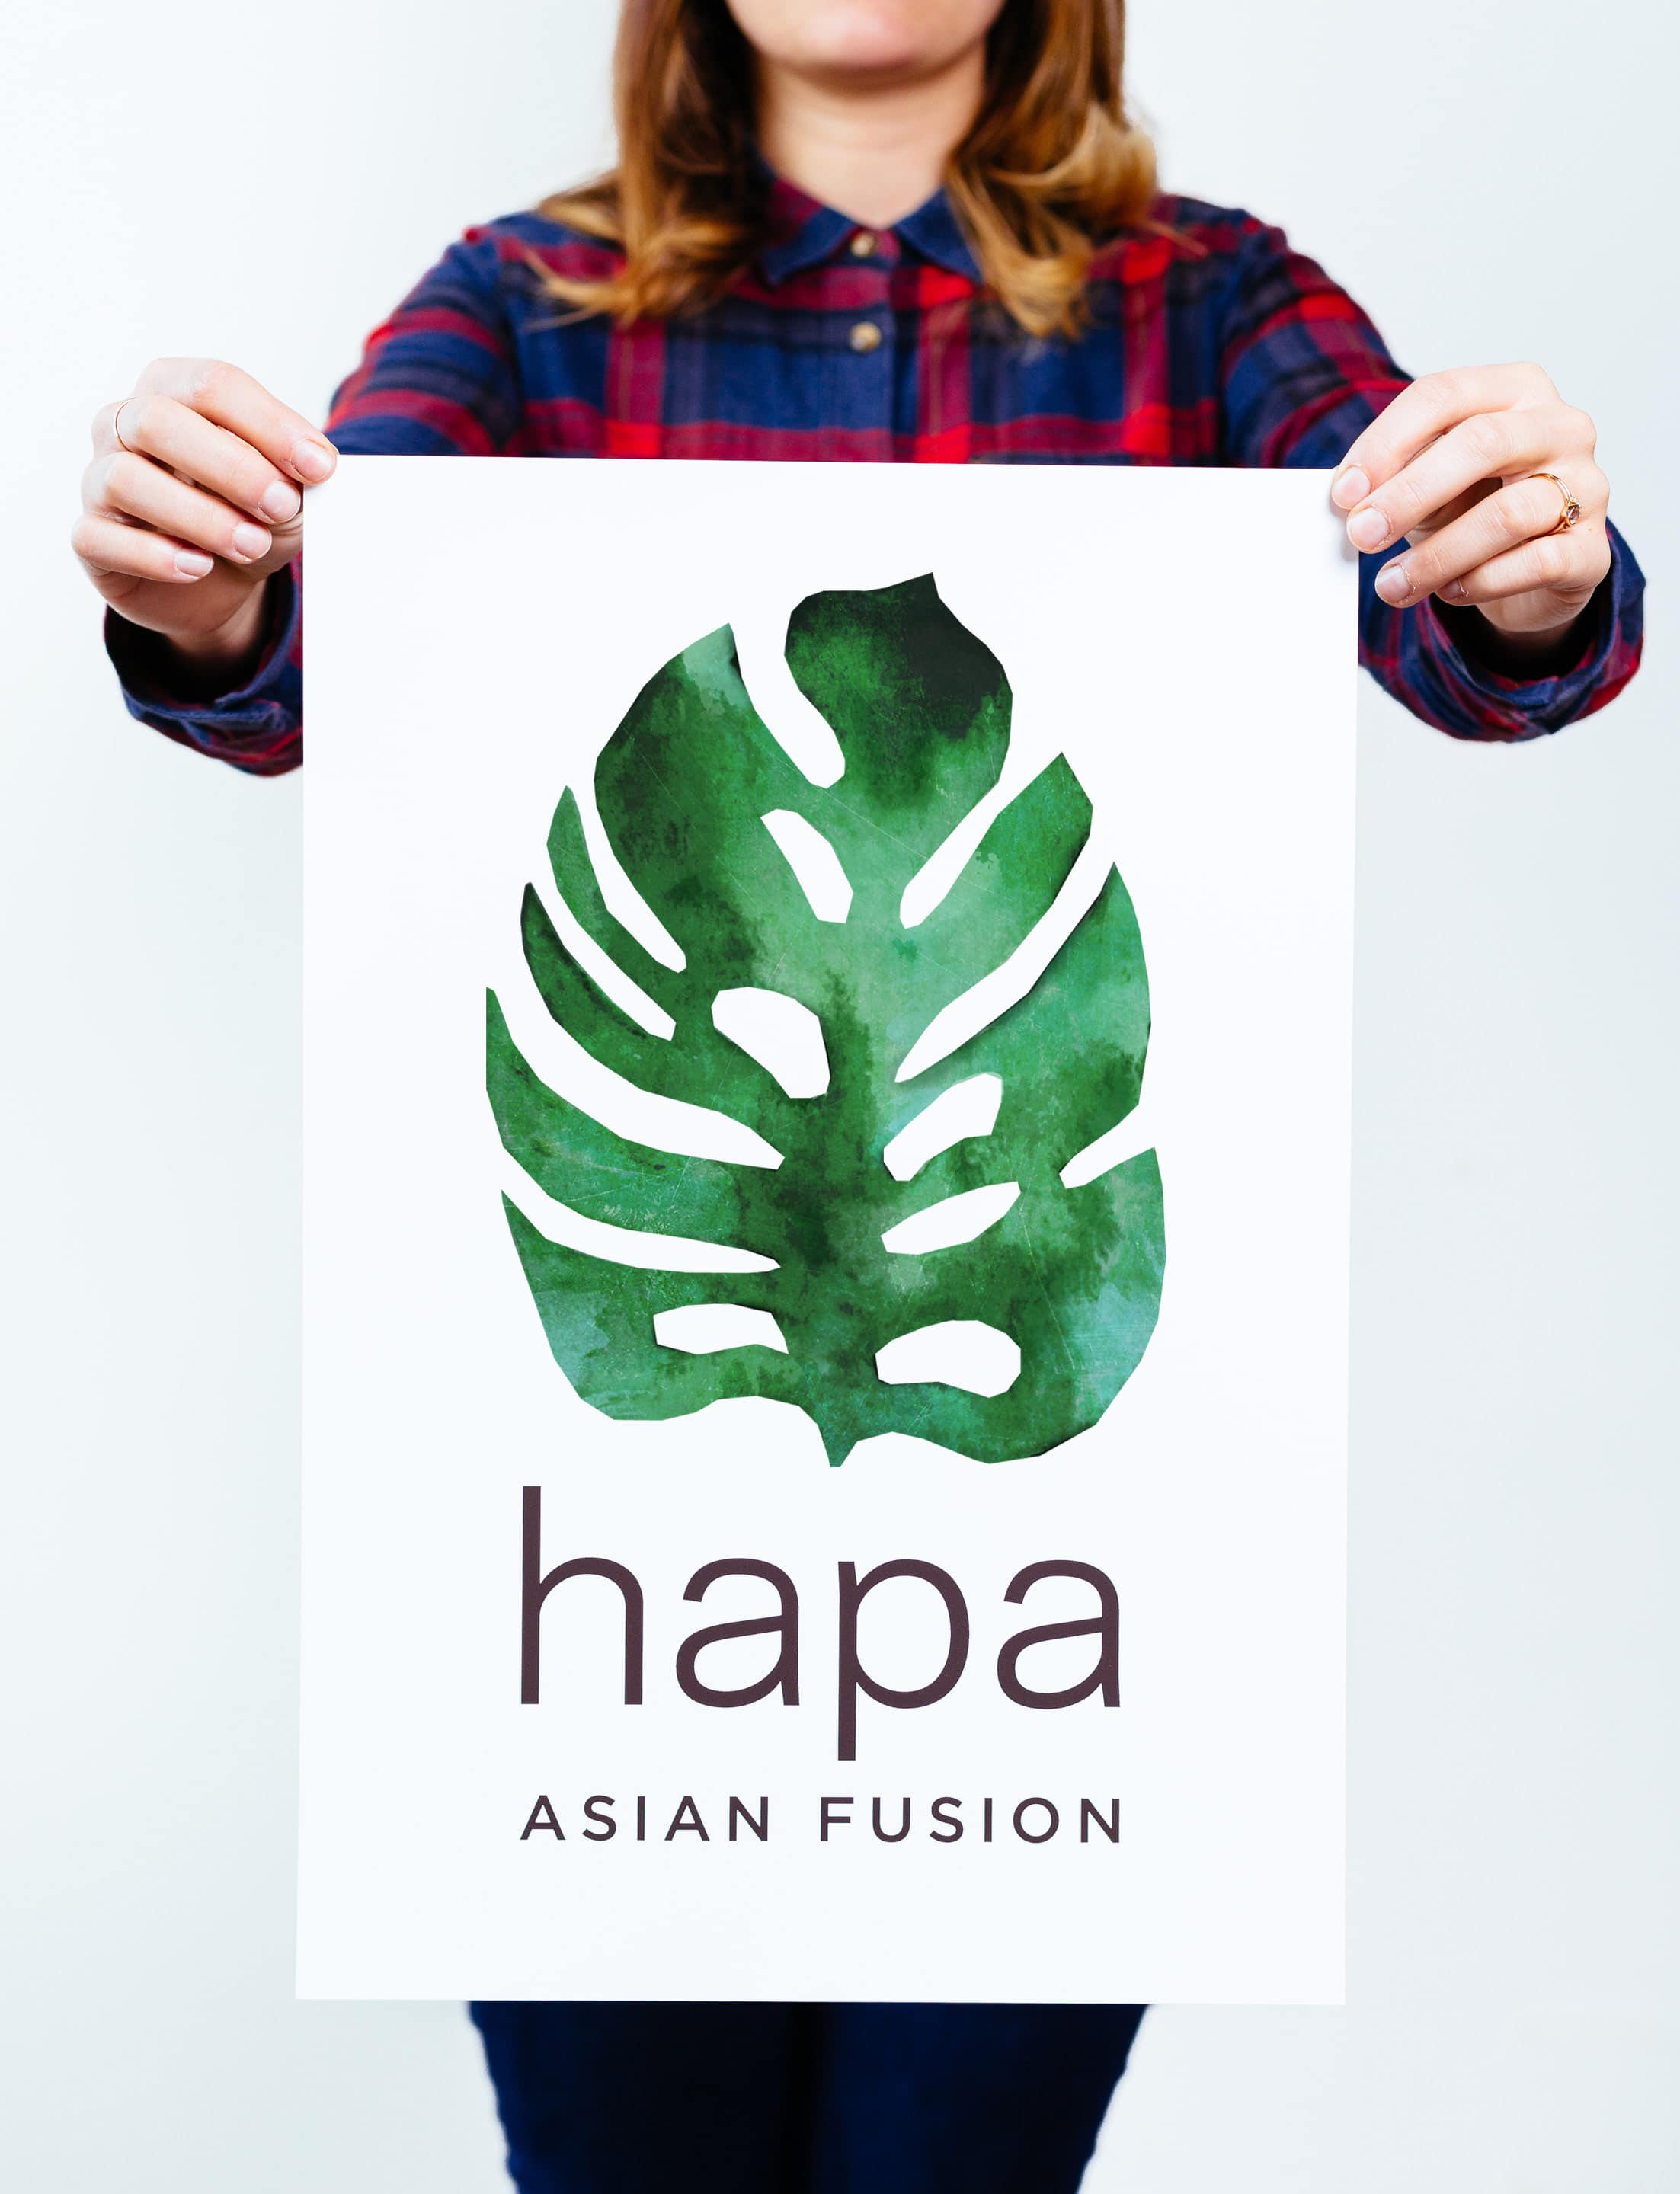 Hapa Asian Fusion logo by Needmore Designs